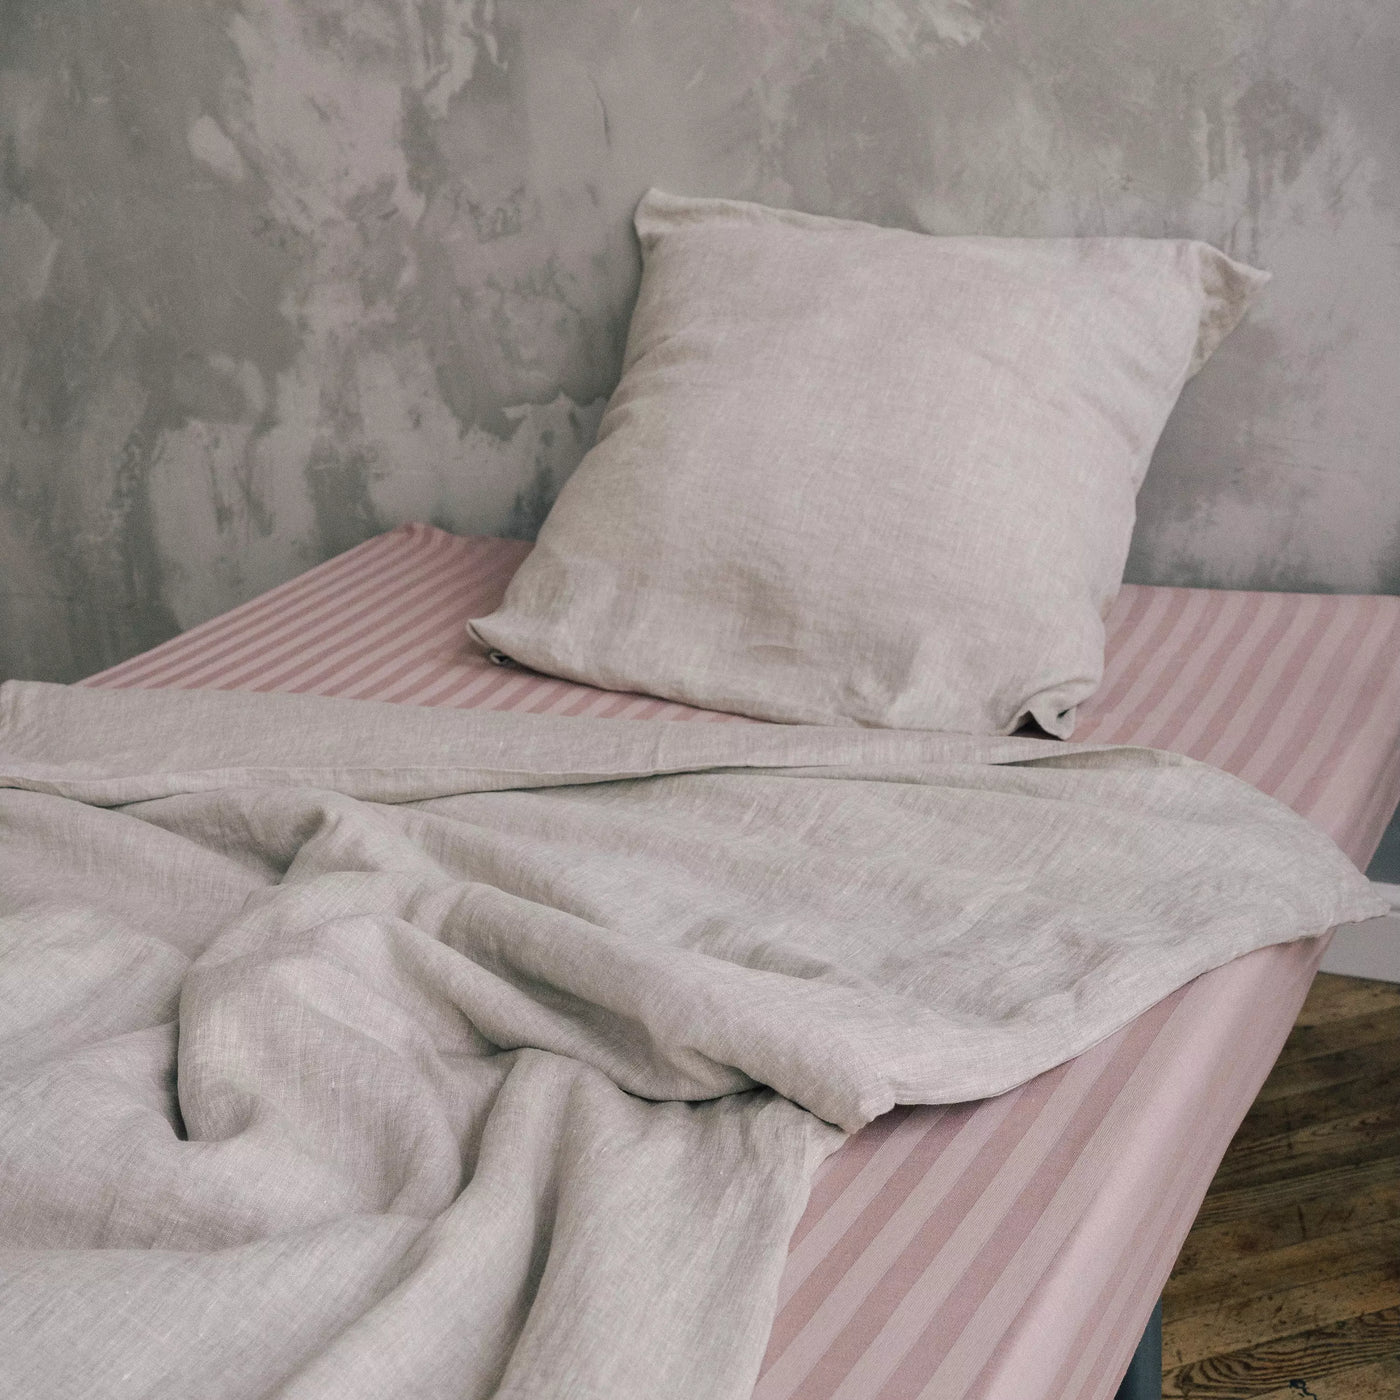 Acquista online il lenzuolo matrimoniale super soffice in lino e cotone con riga rosa 4